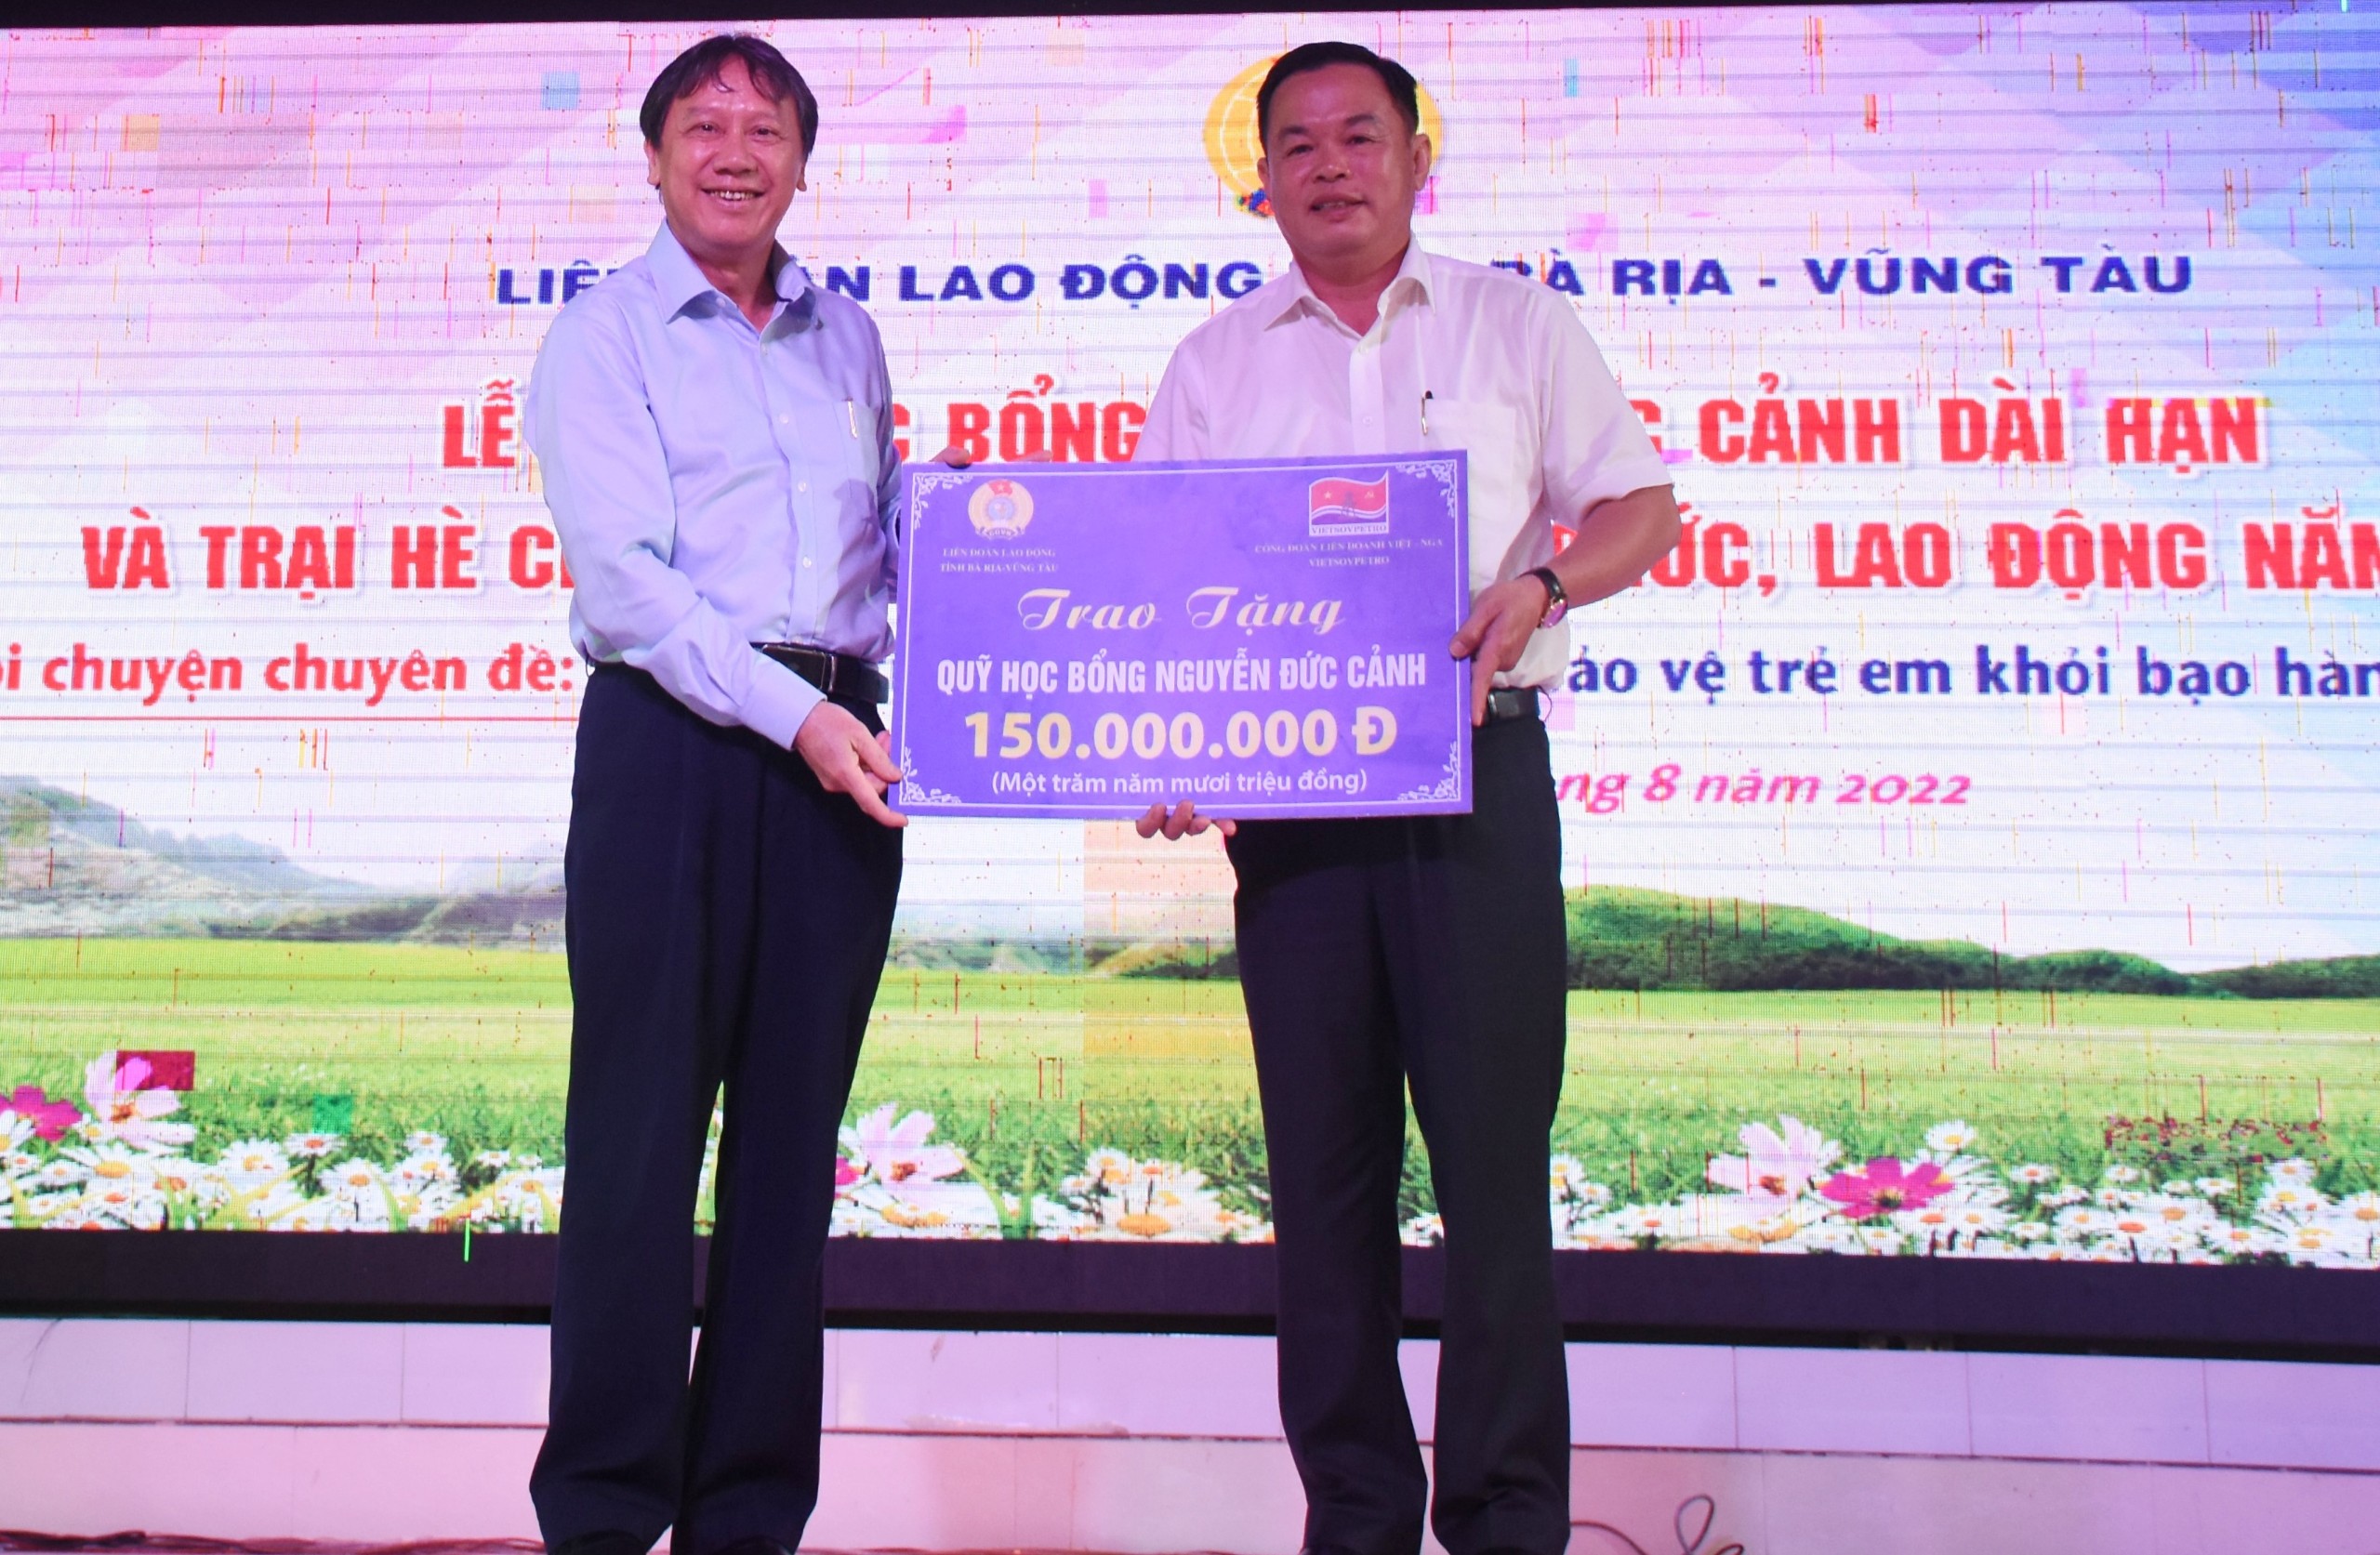 Ông Nguyễn Quốc Đạt, Chủ tịch Công đoàn Liên doanh Việt Nga Vietsovpetro trao tặng 150 triệu đồng cho Qũy học bổng Nguyễn Đức Cảnh